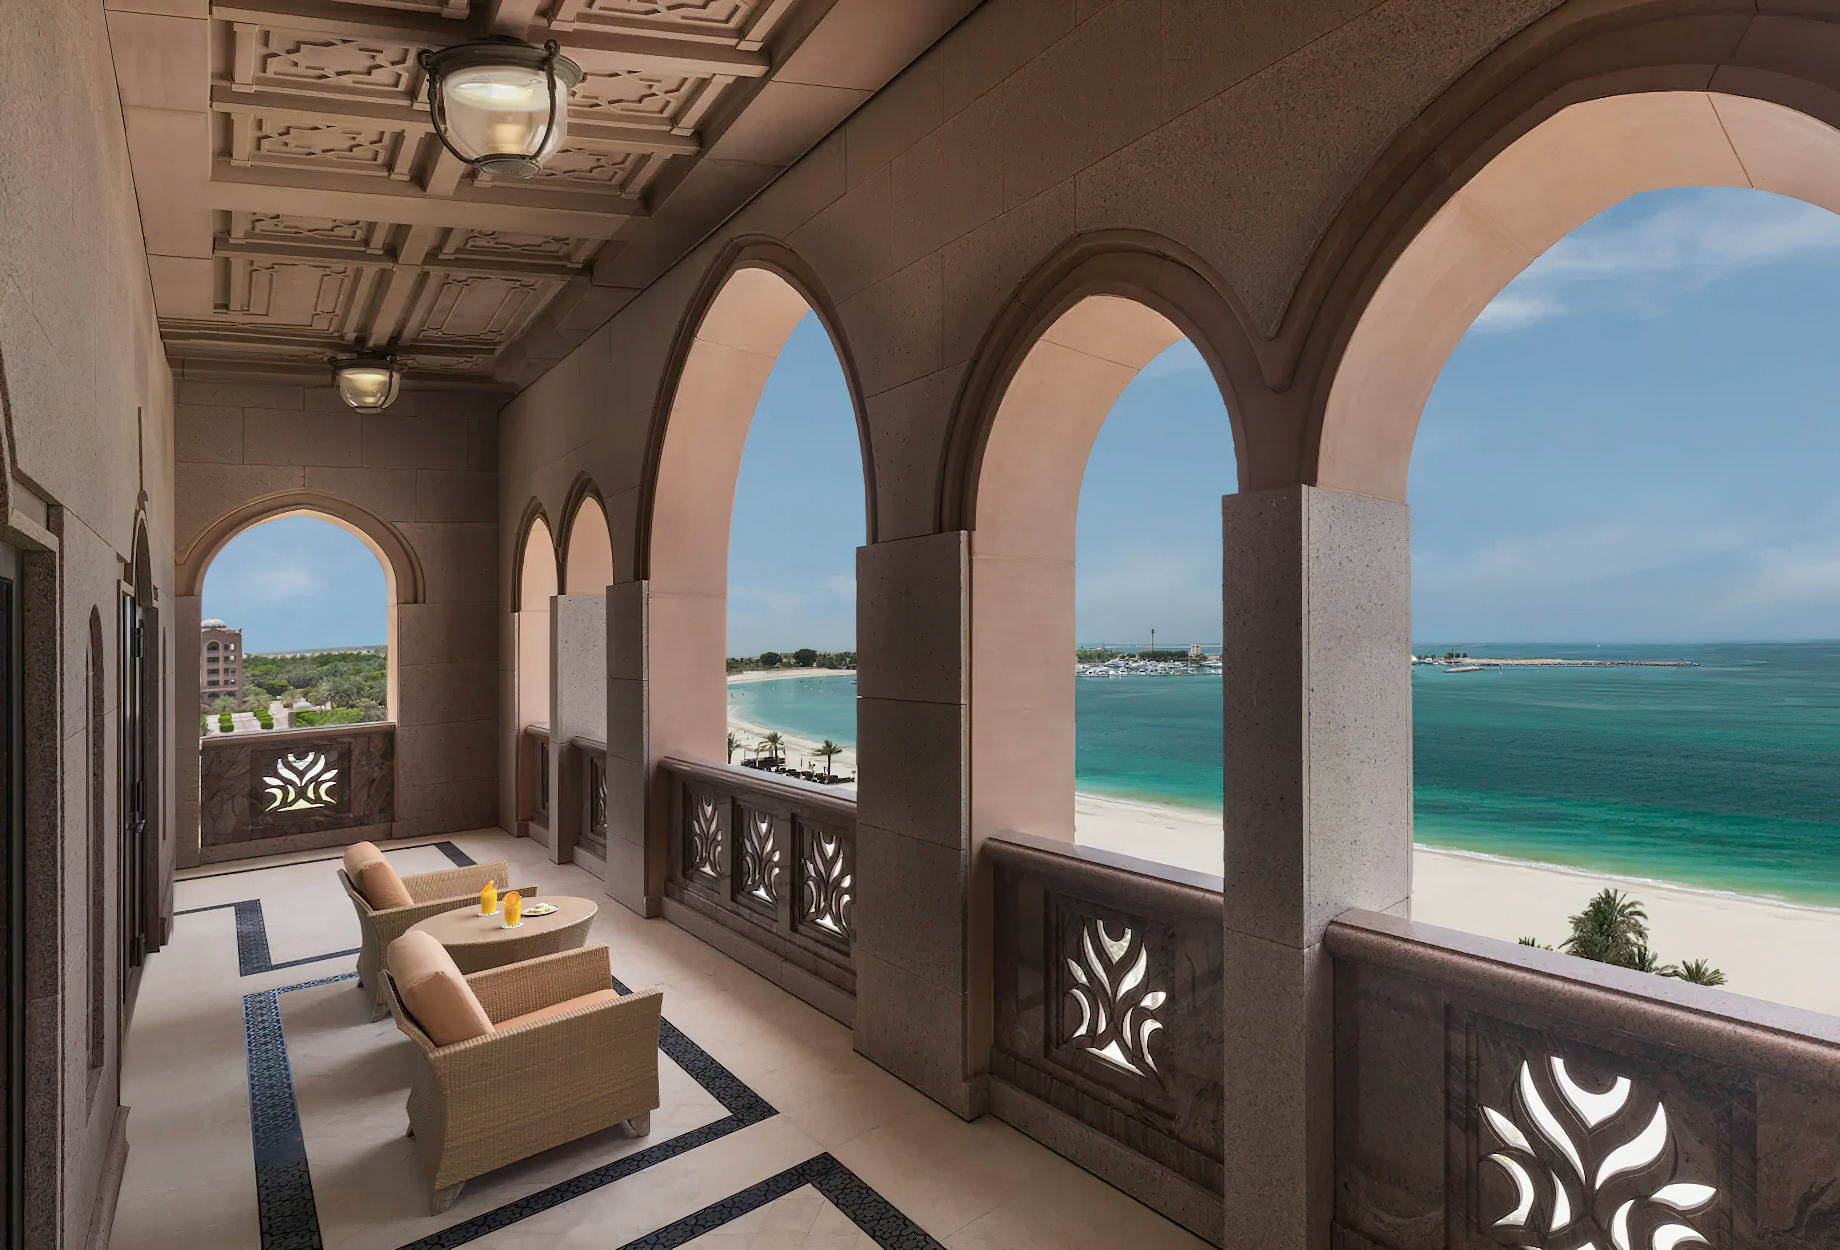 Emirates Palace Abu Dhabi Hotel – Abu Dhabi, UAE – Royal Suite Balcony